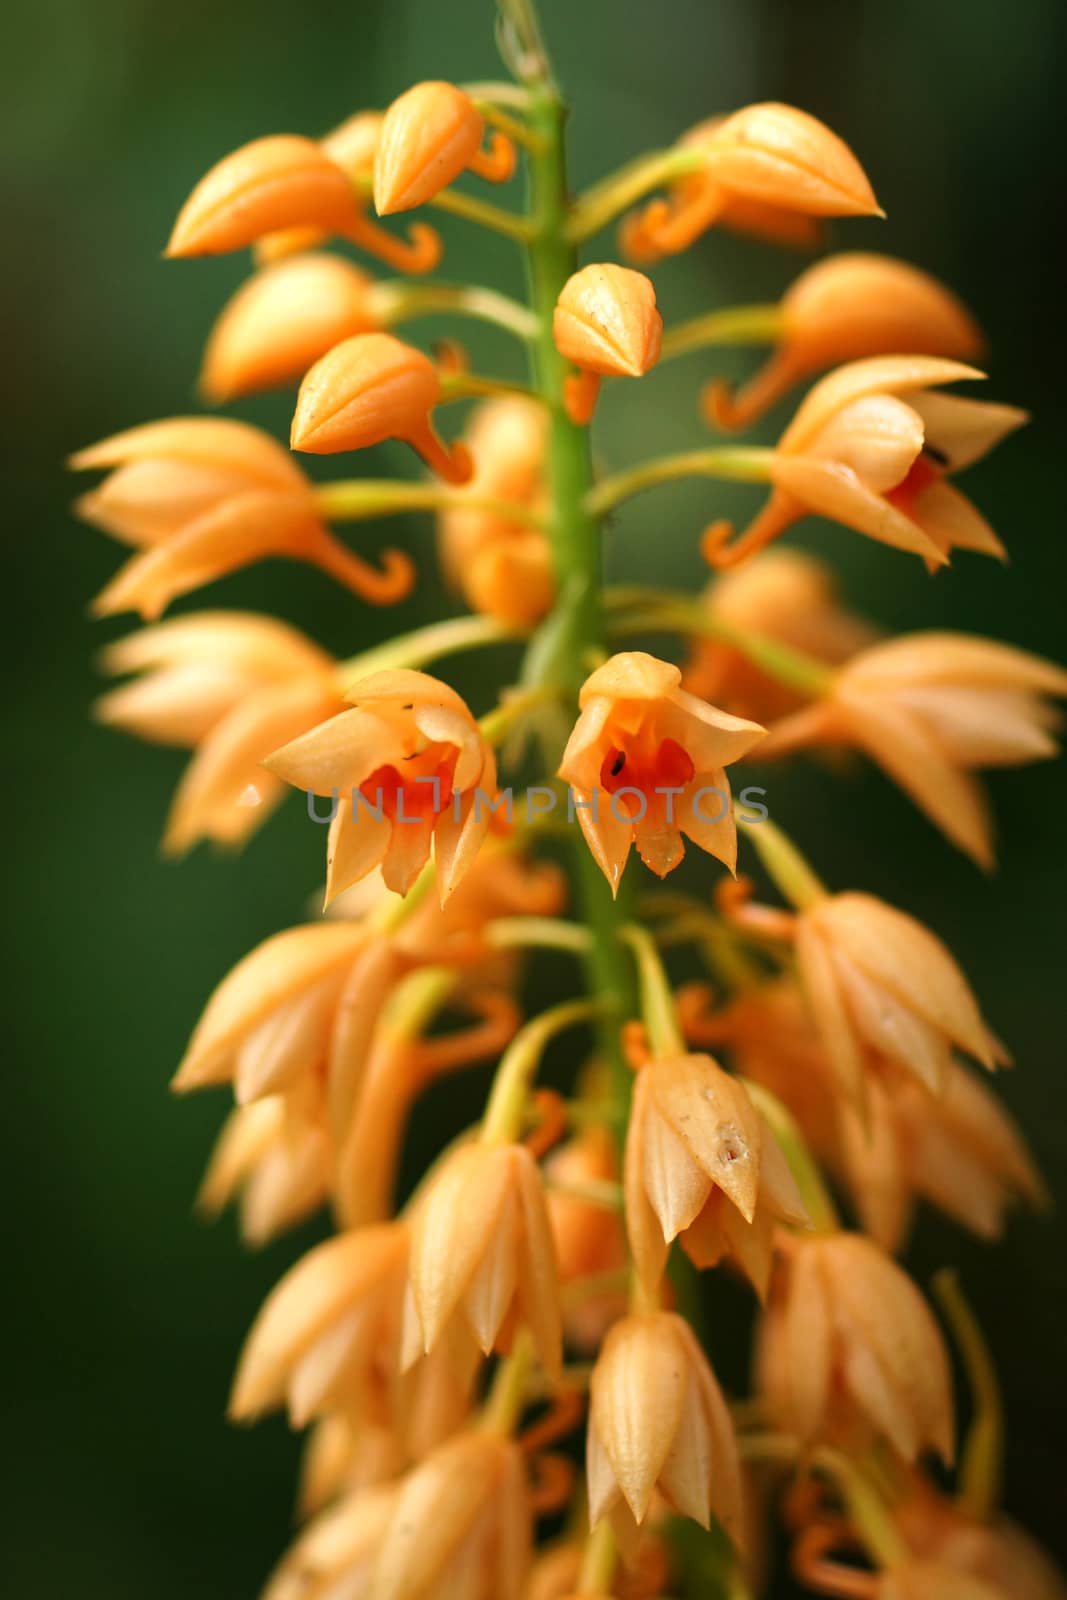 Wild orchid orange soft. by Noppharat_th